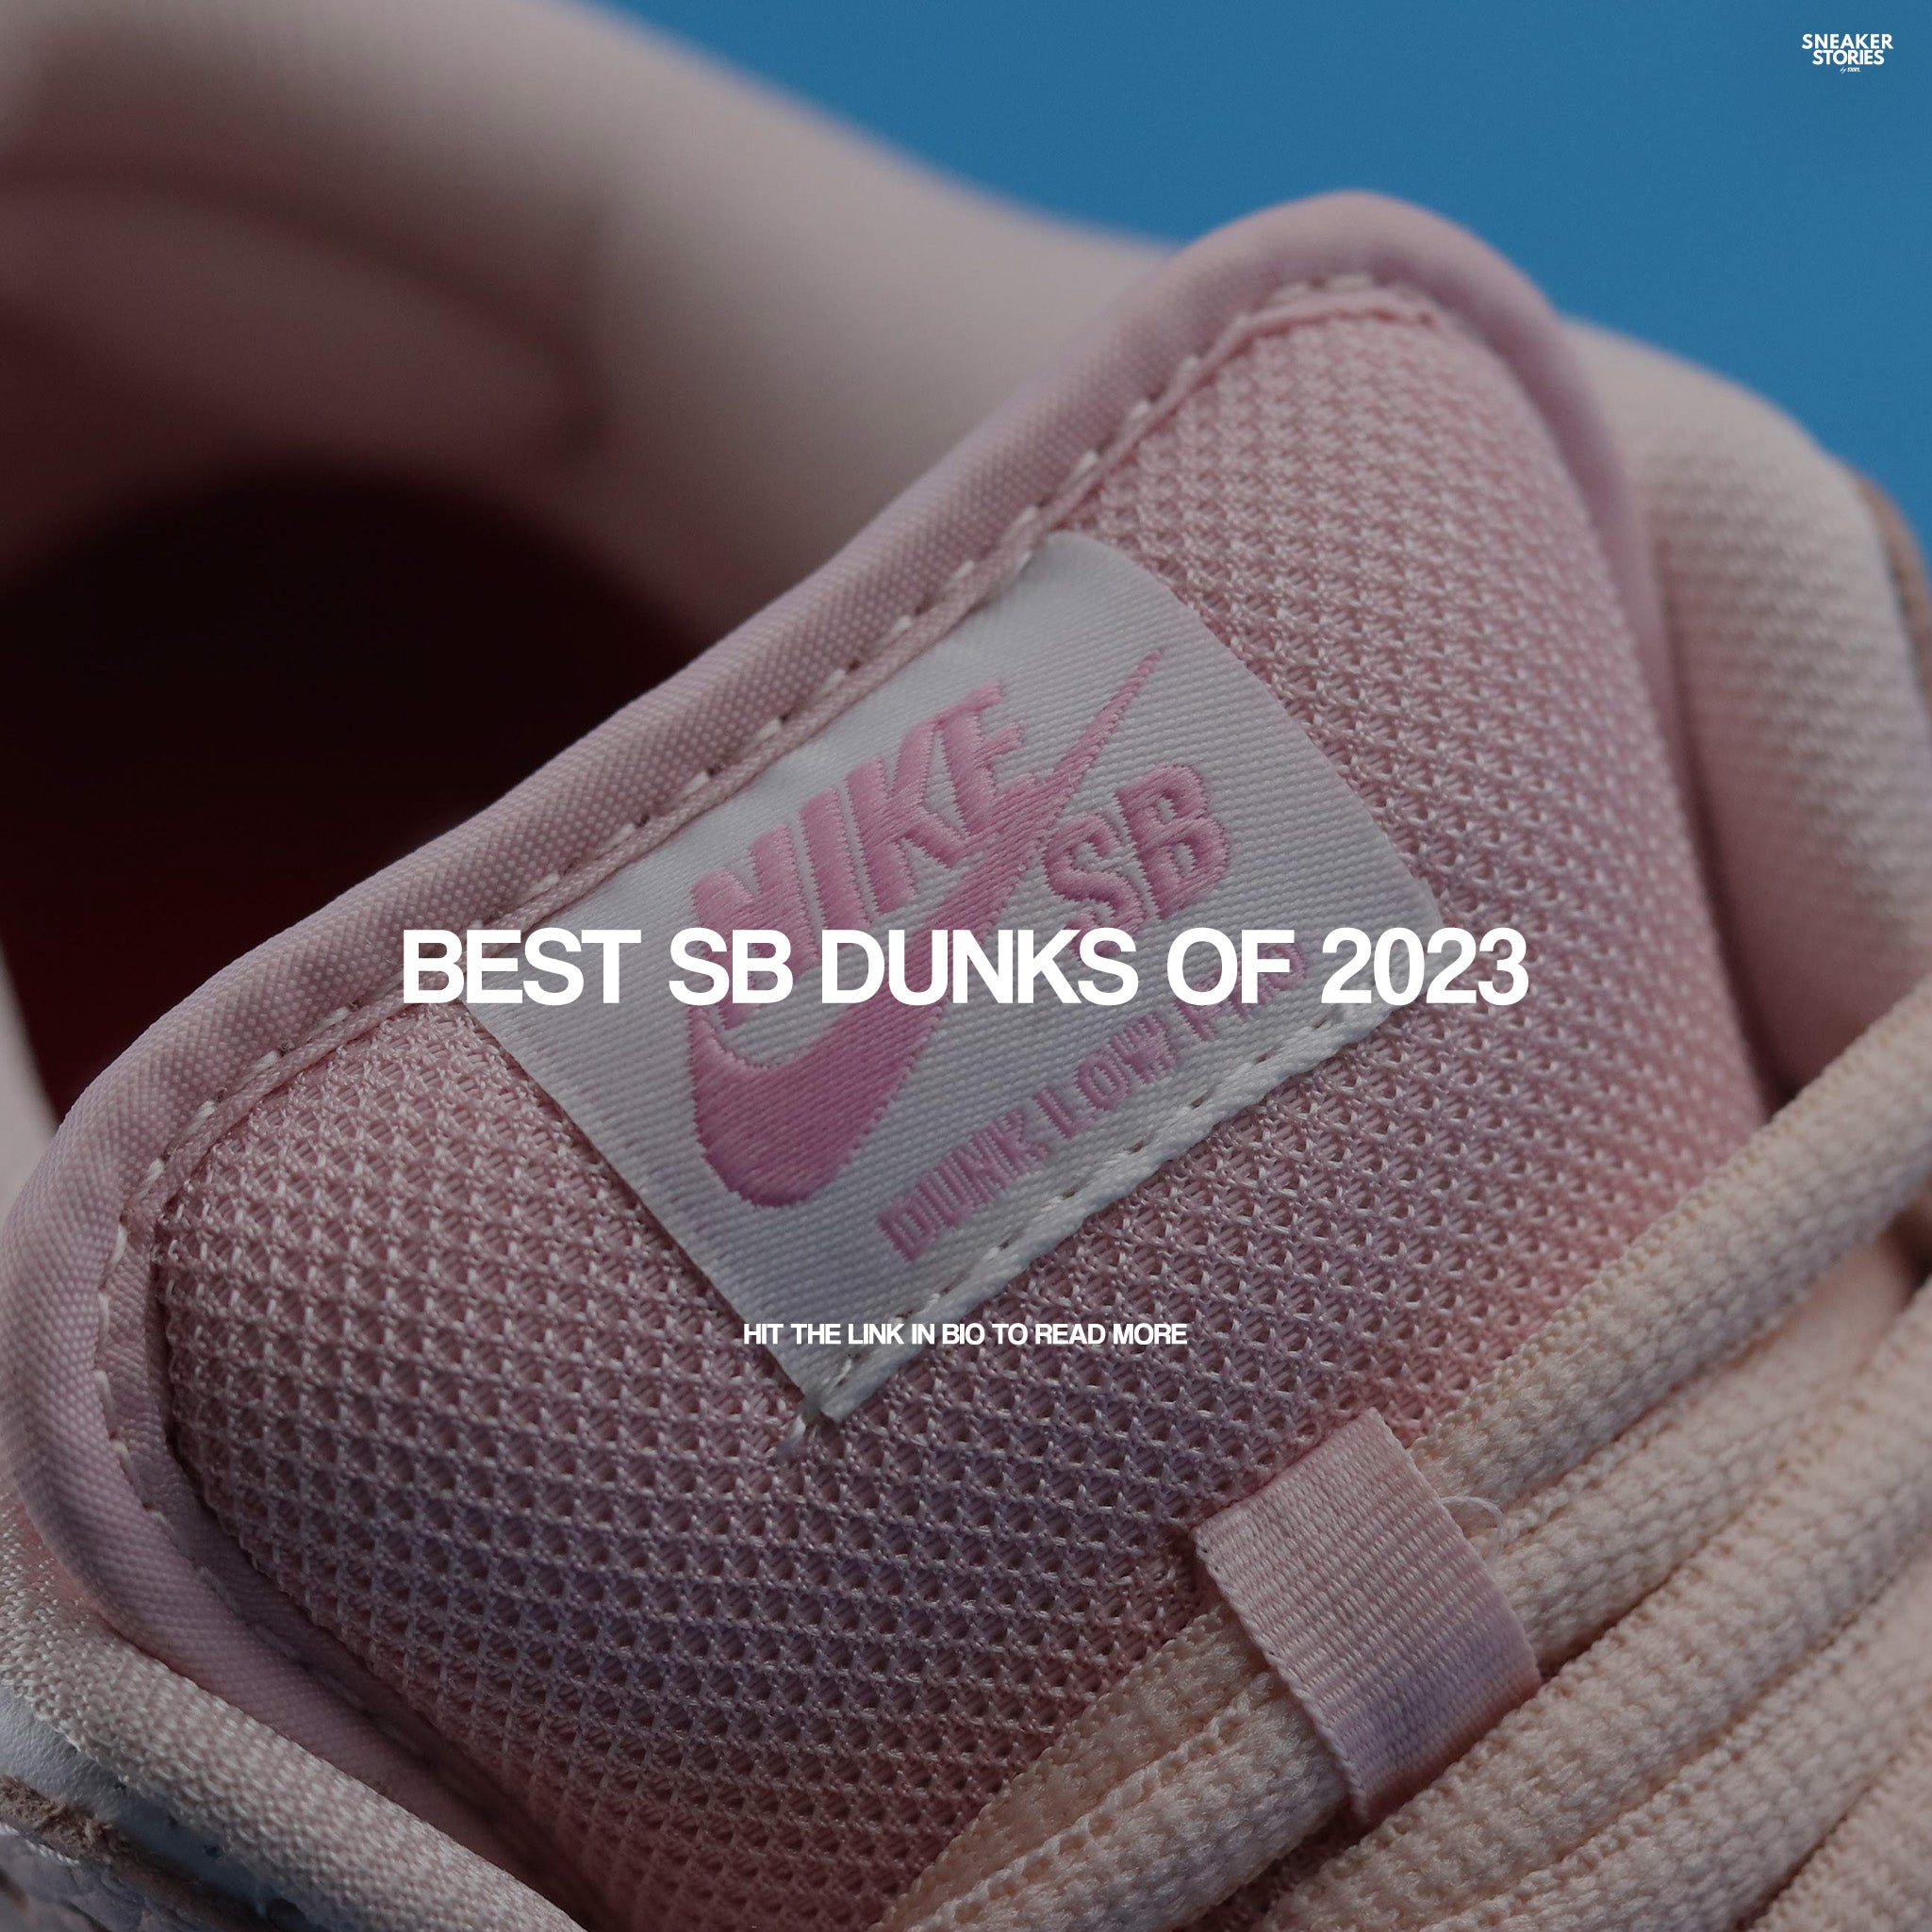 Best SB dunks of 2023